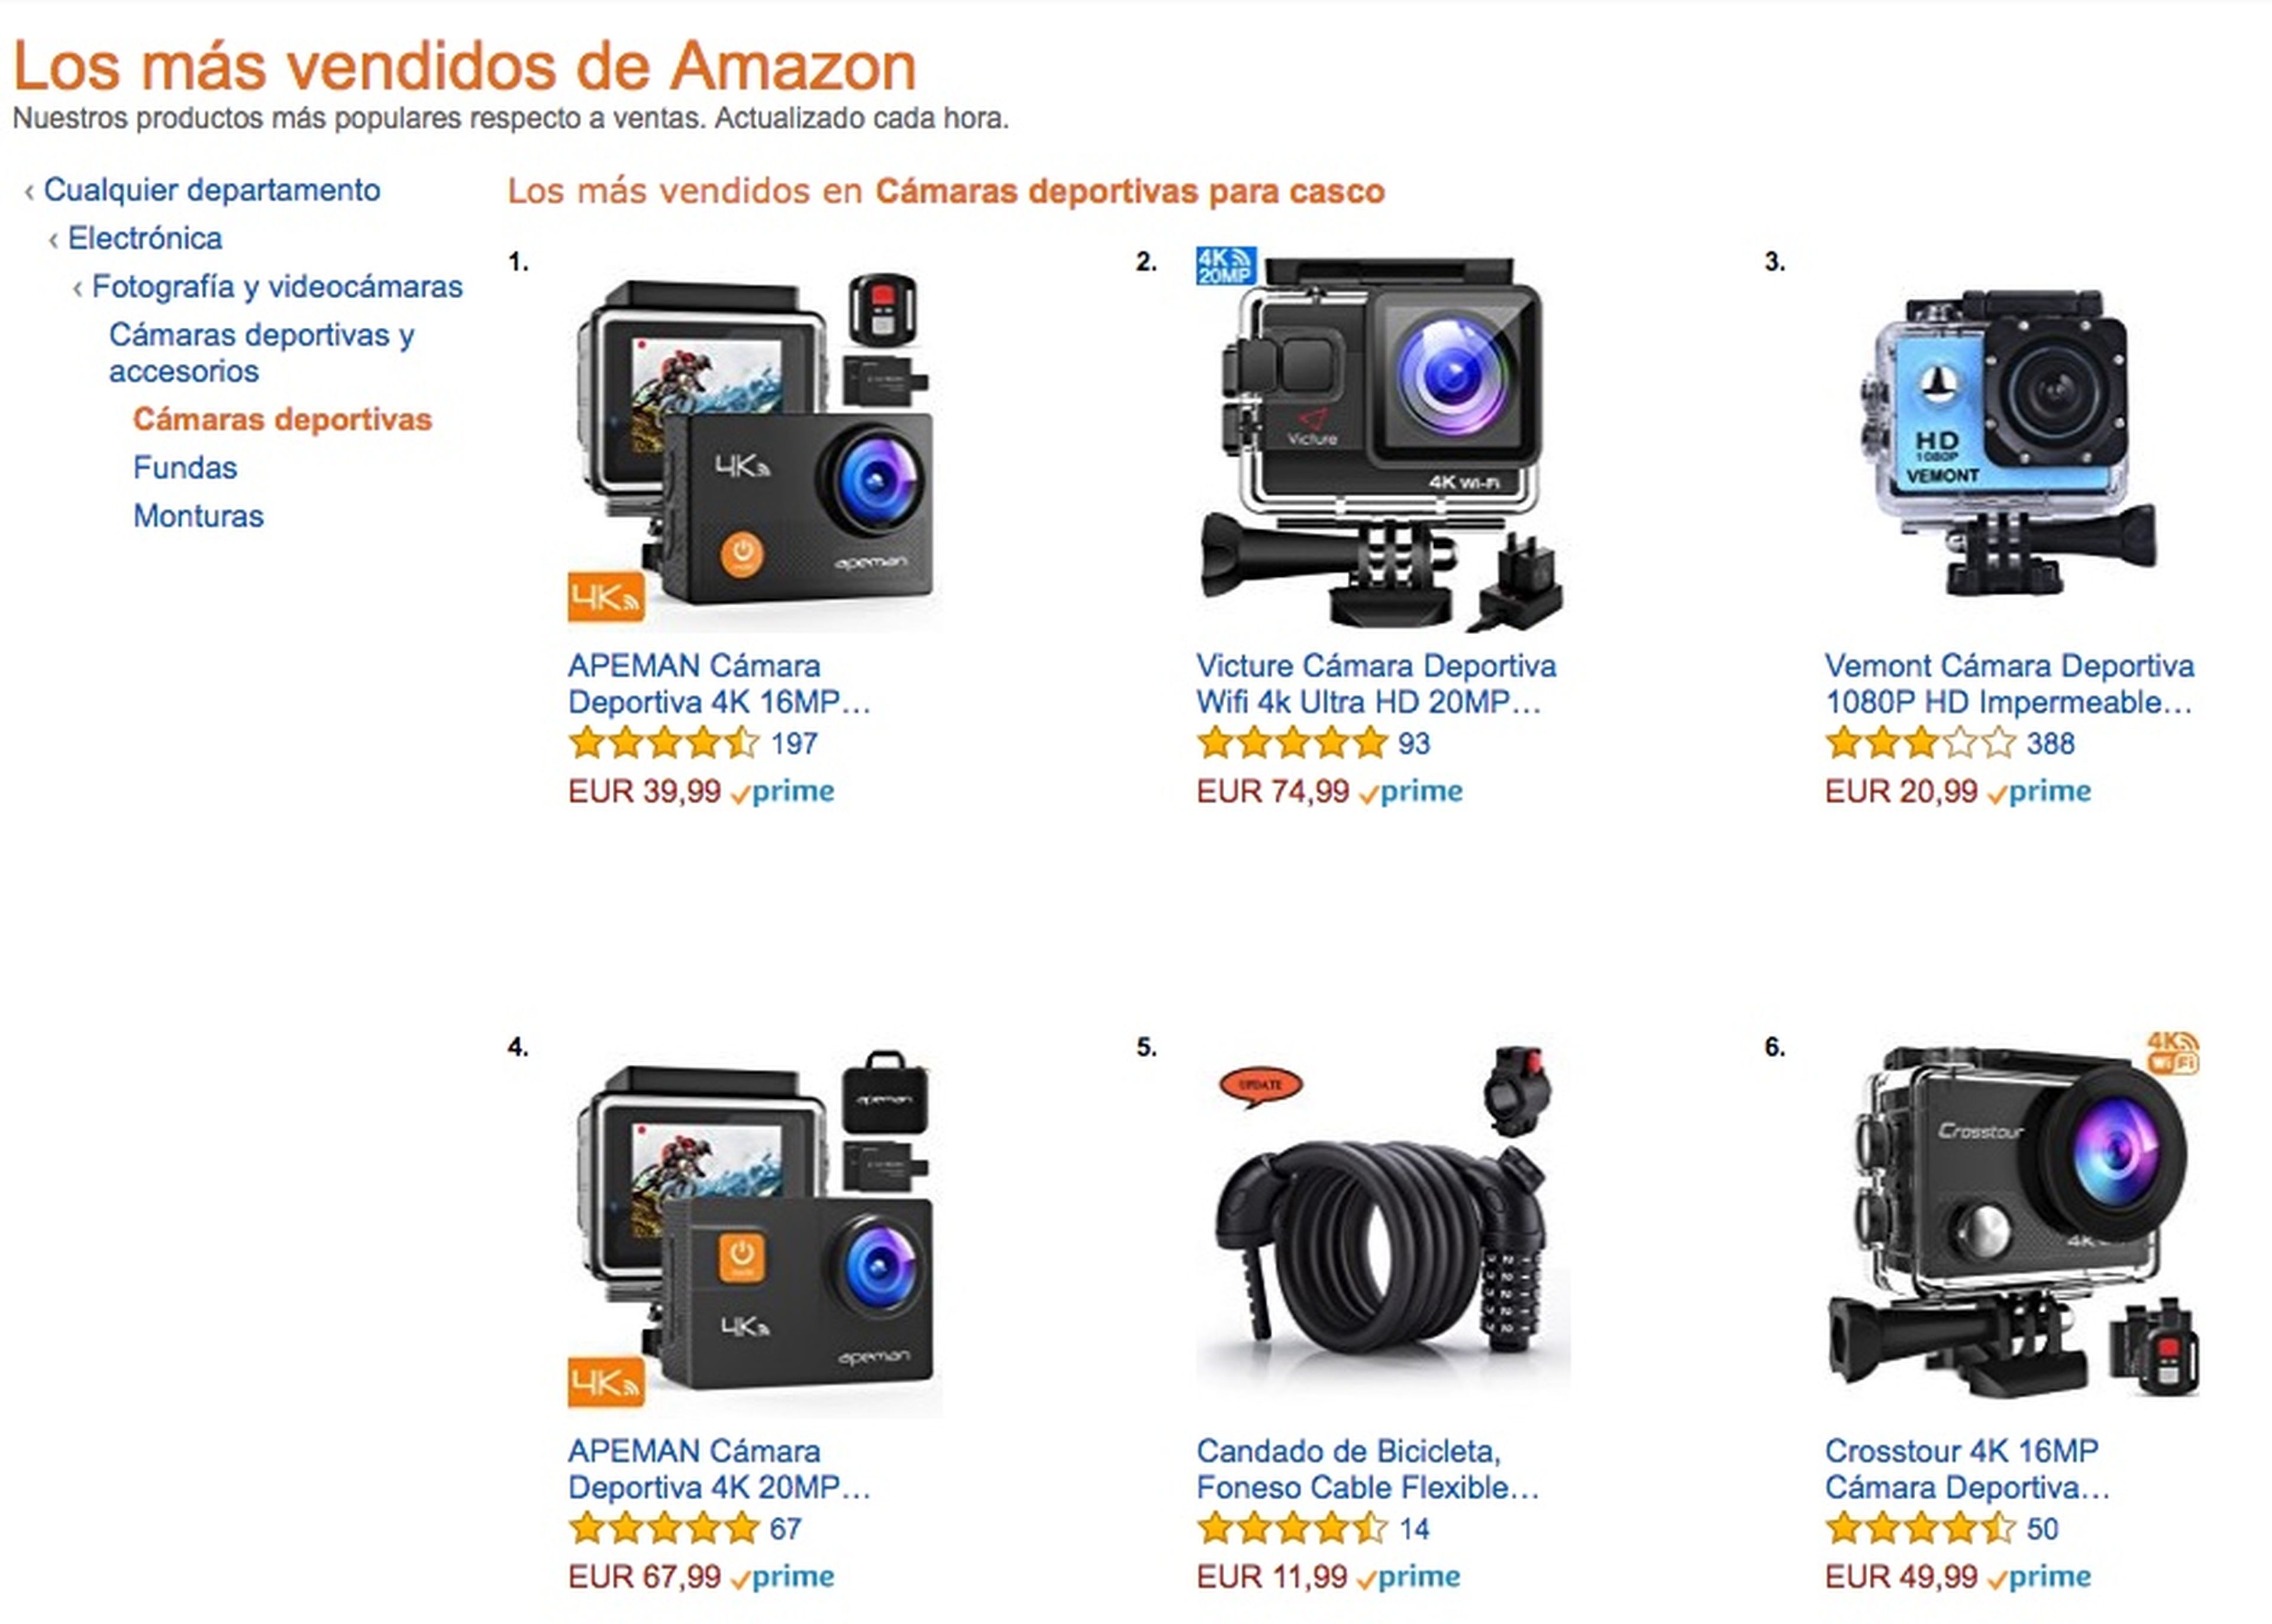 Las cámaras deportivas más vendidas en Amazon